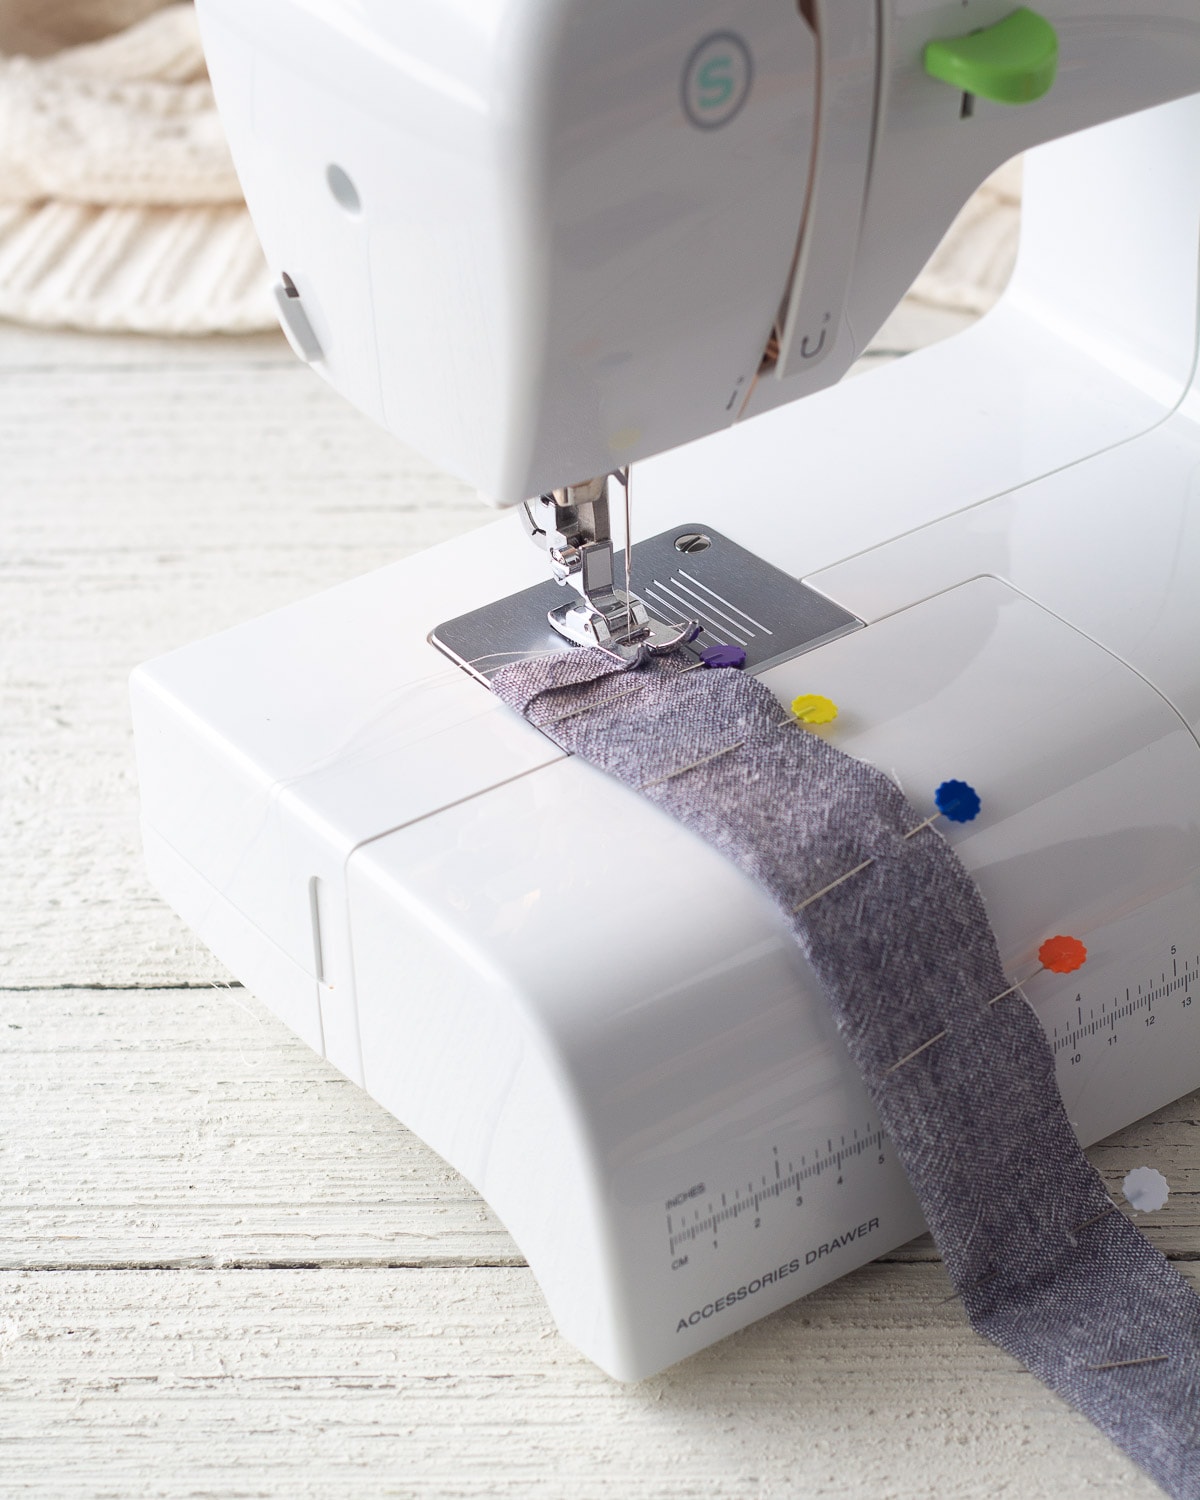 Sewing a scrunchie seam with a sewing machine.